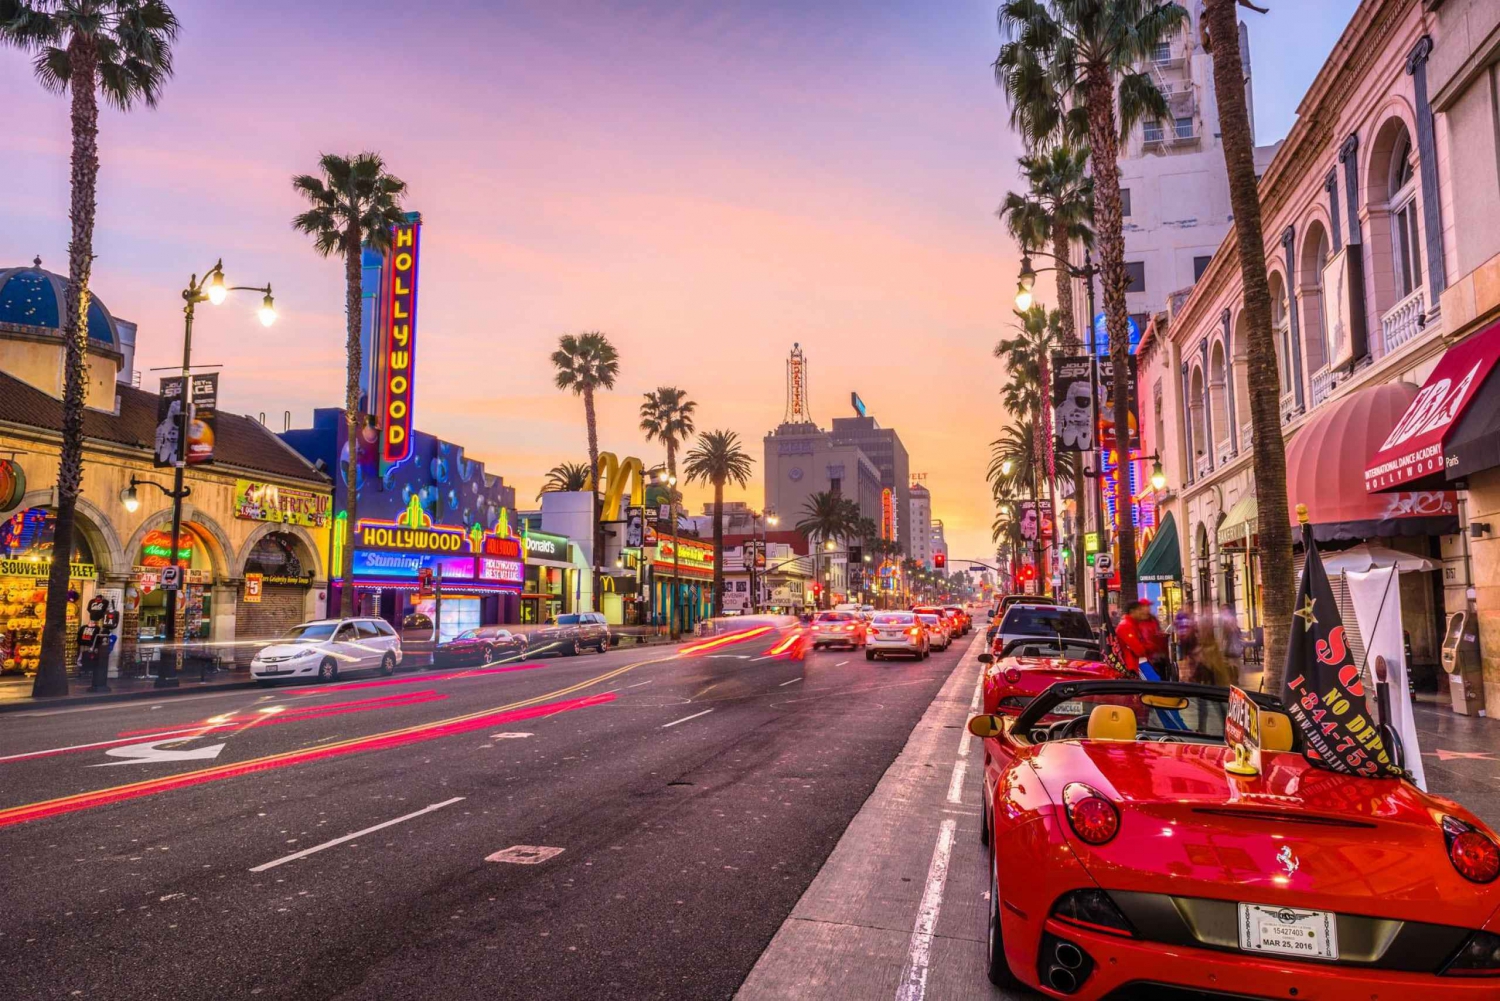 Las Vegasista: Los Angeles/Hollywood päiväretki